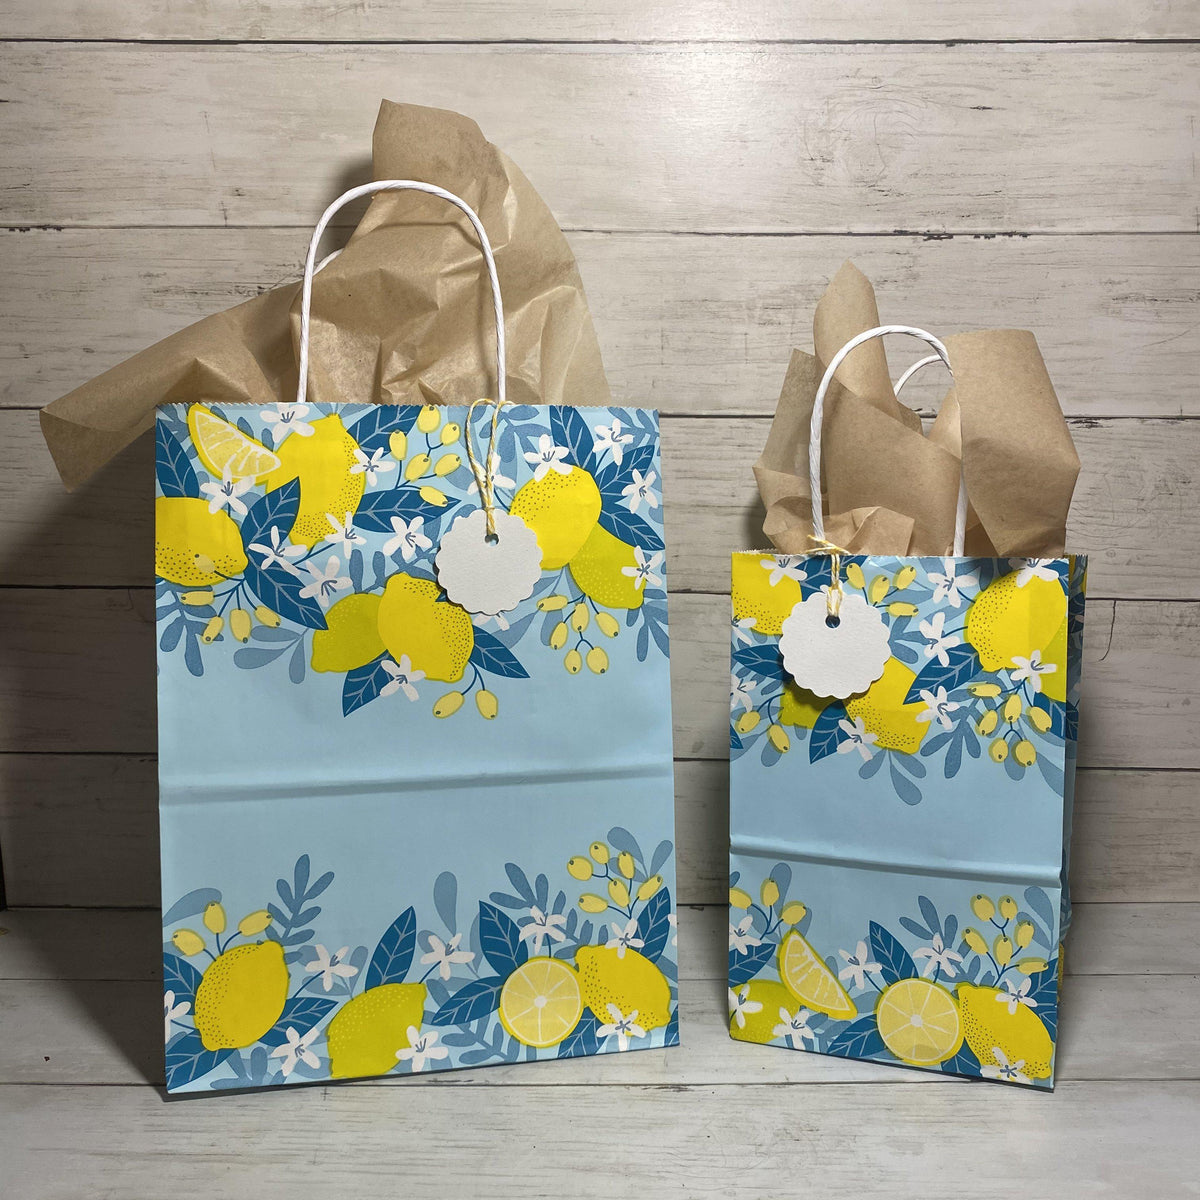 12pcs Lemon Party Bags,Summer Cool Paper Bags,Lemon Juice Gift Bags,Yellow  Lemon Party Favor Bags with 18 pcs Lemon Stickers